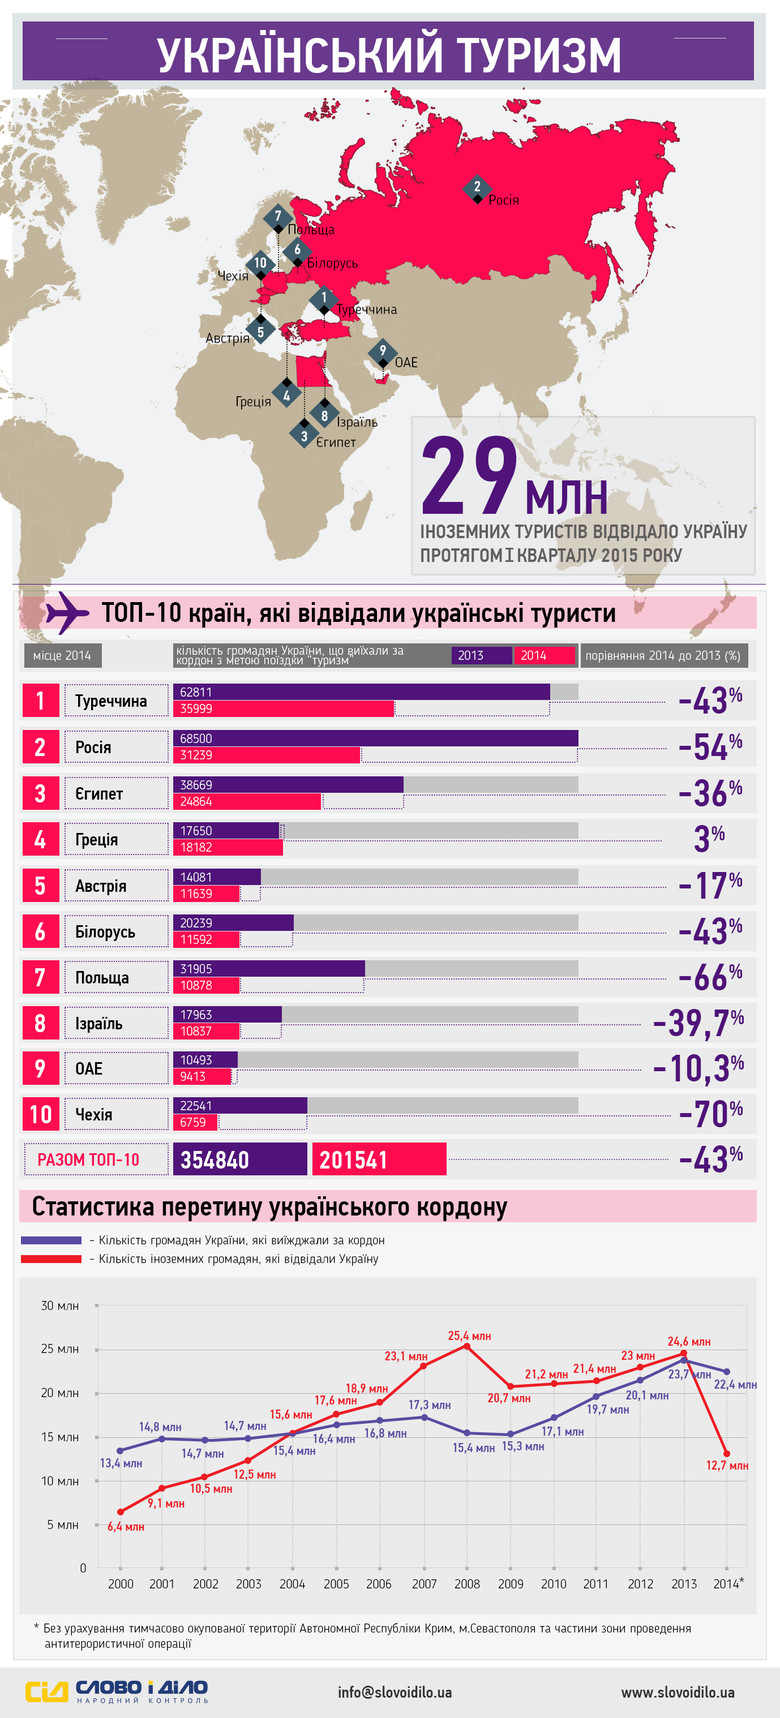 В 2013 году количество граждан Украины, которые выехали за границу с целью поездки «туризм» перевалила отметку в 350 000 человек. А вот 2014 год ознаменовался существенным уменьшением посещений границы украинцами.